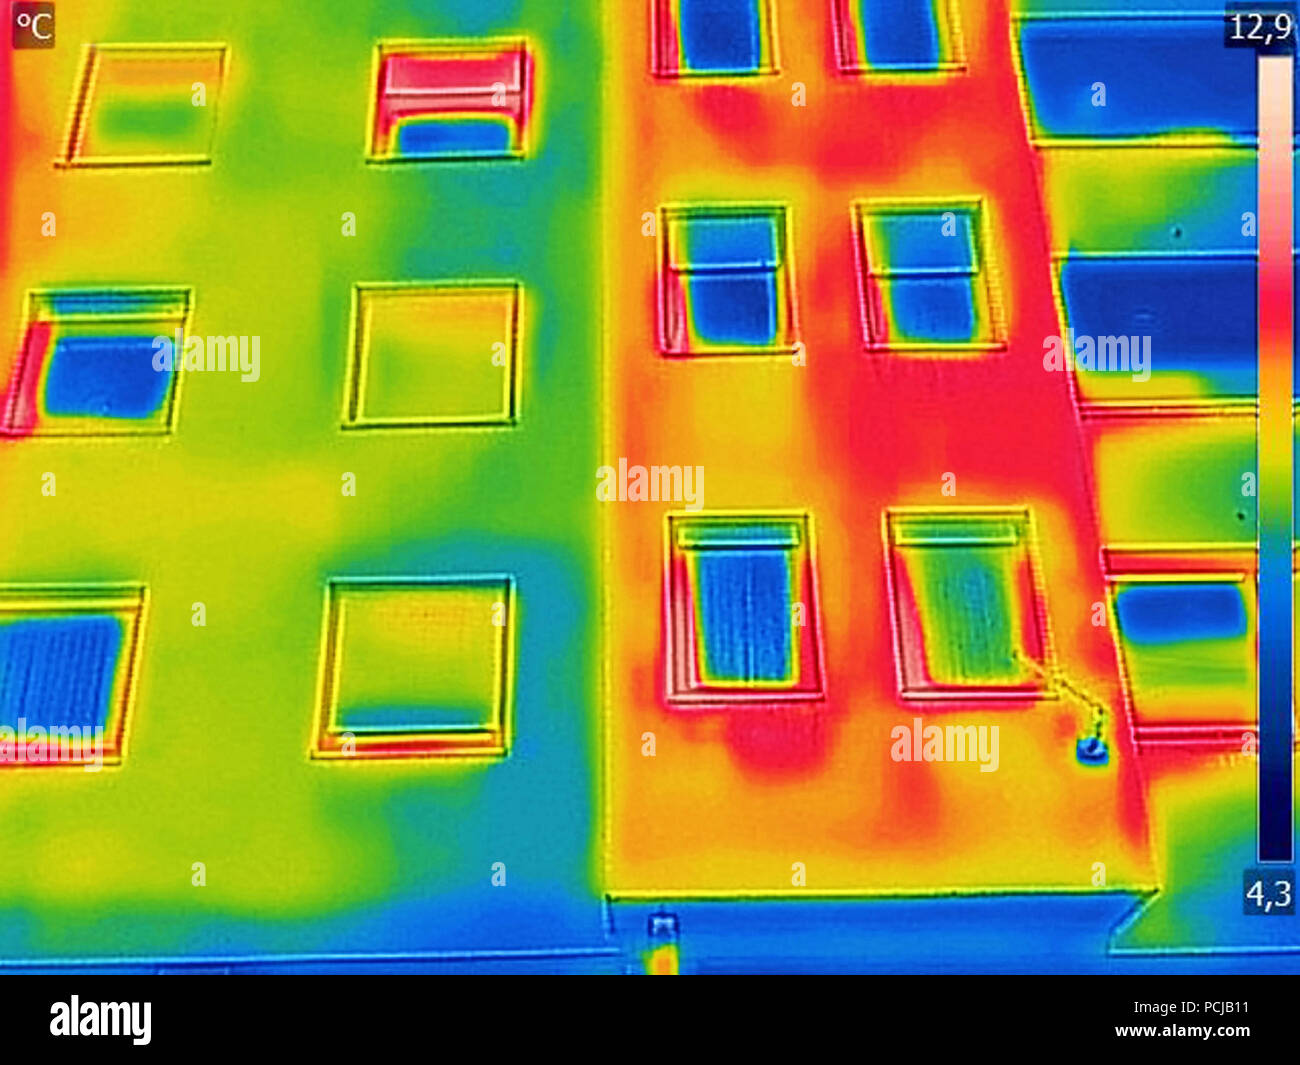 Erkennung von Verlustwärme außerhalb mit Infrarot Wärmebildkamera Gebäude Stockfoto